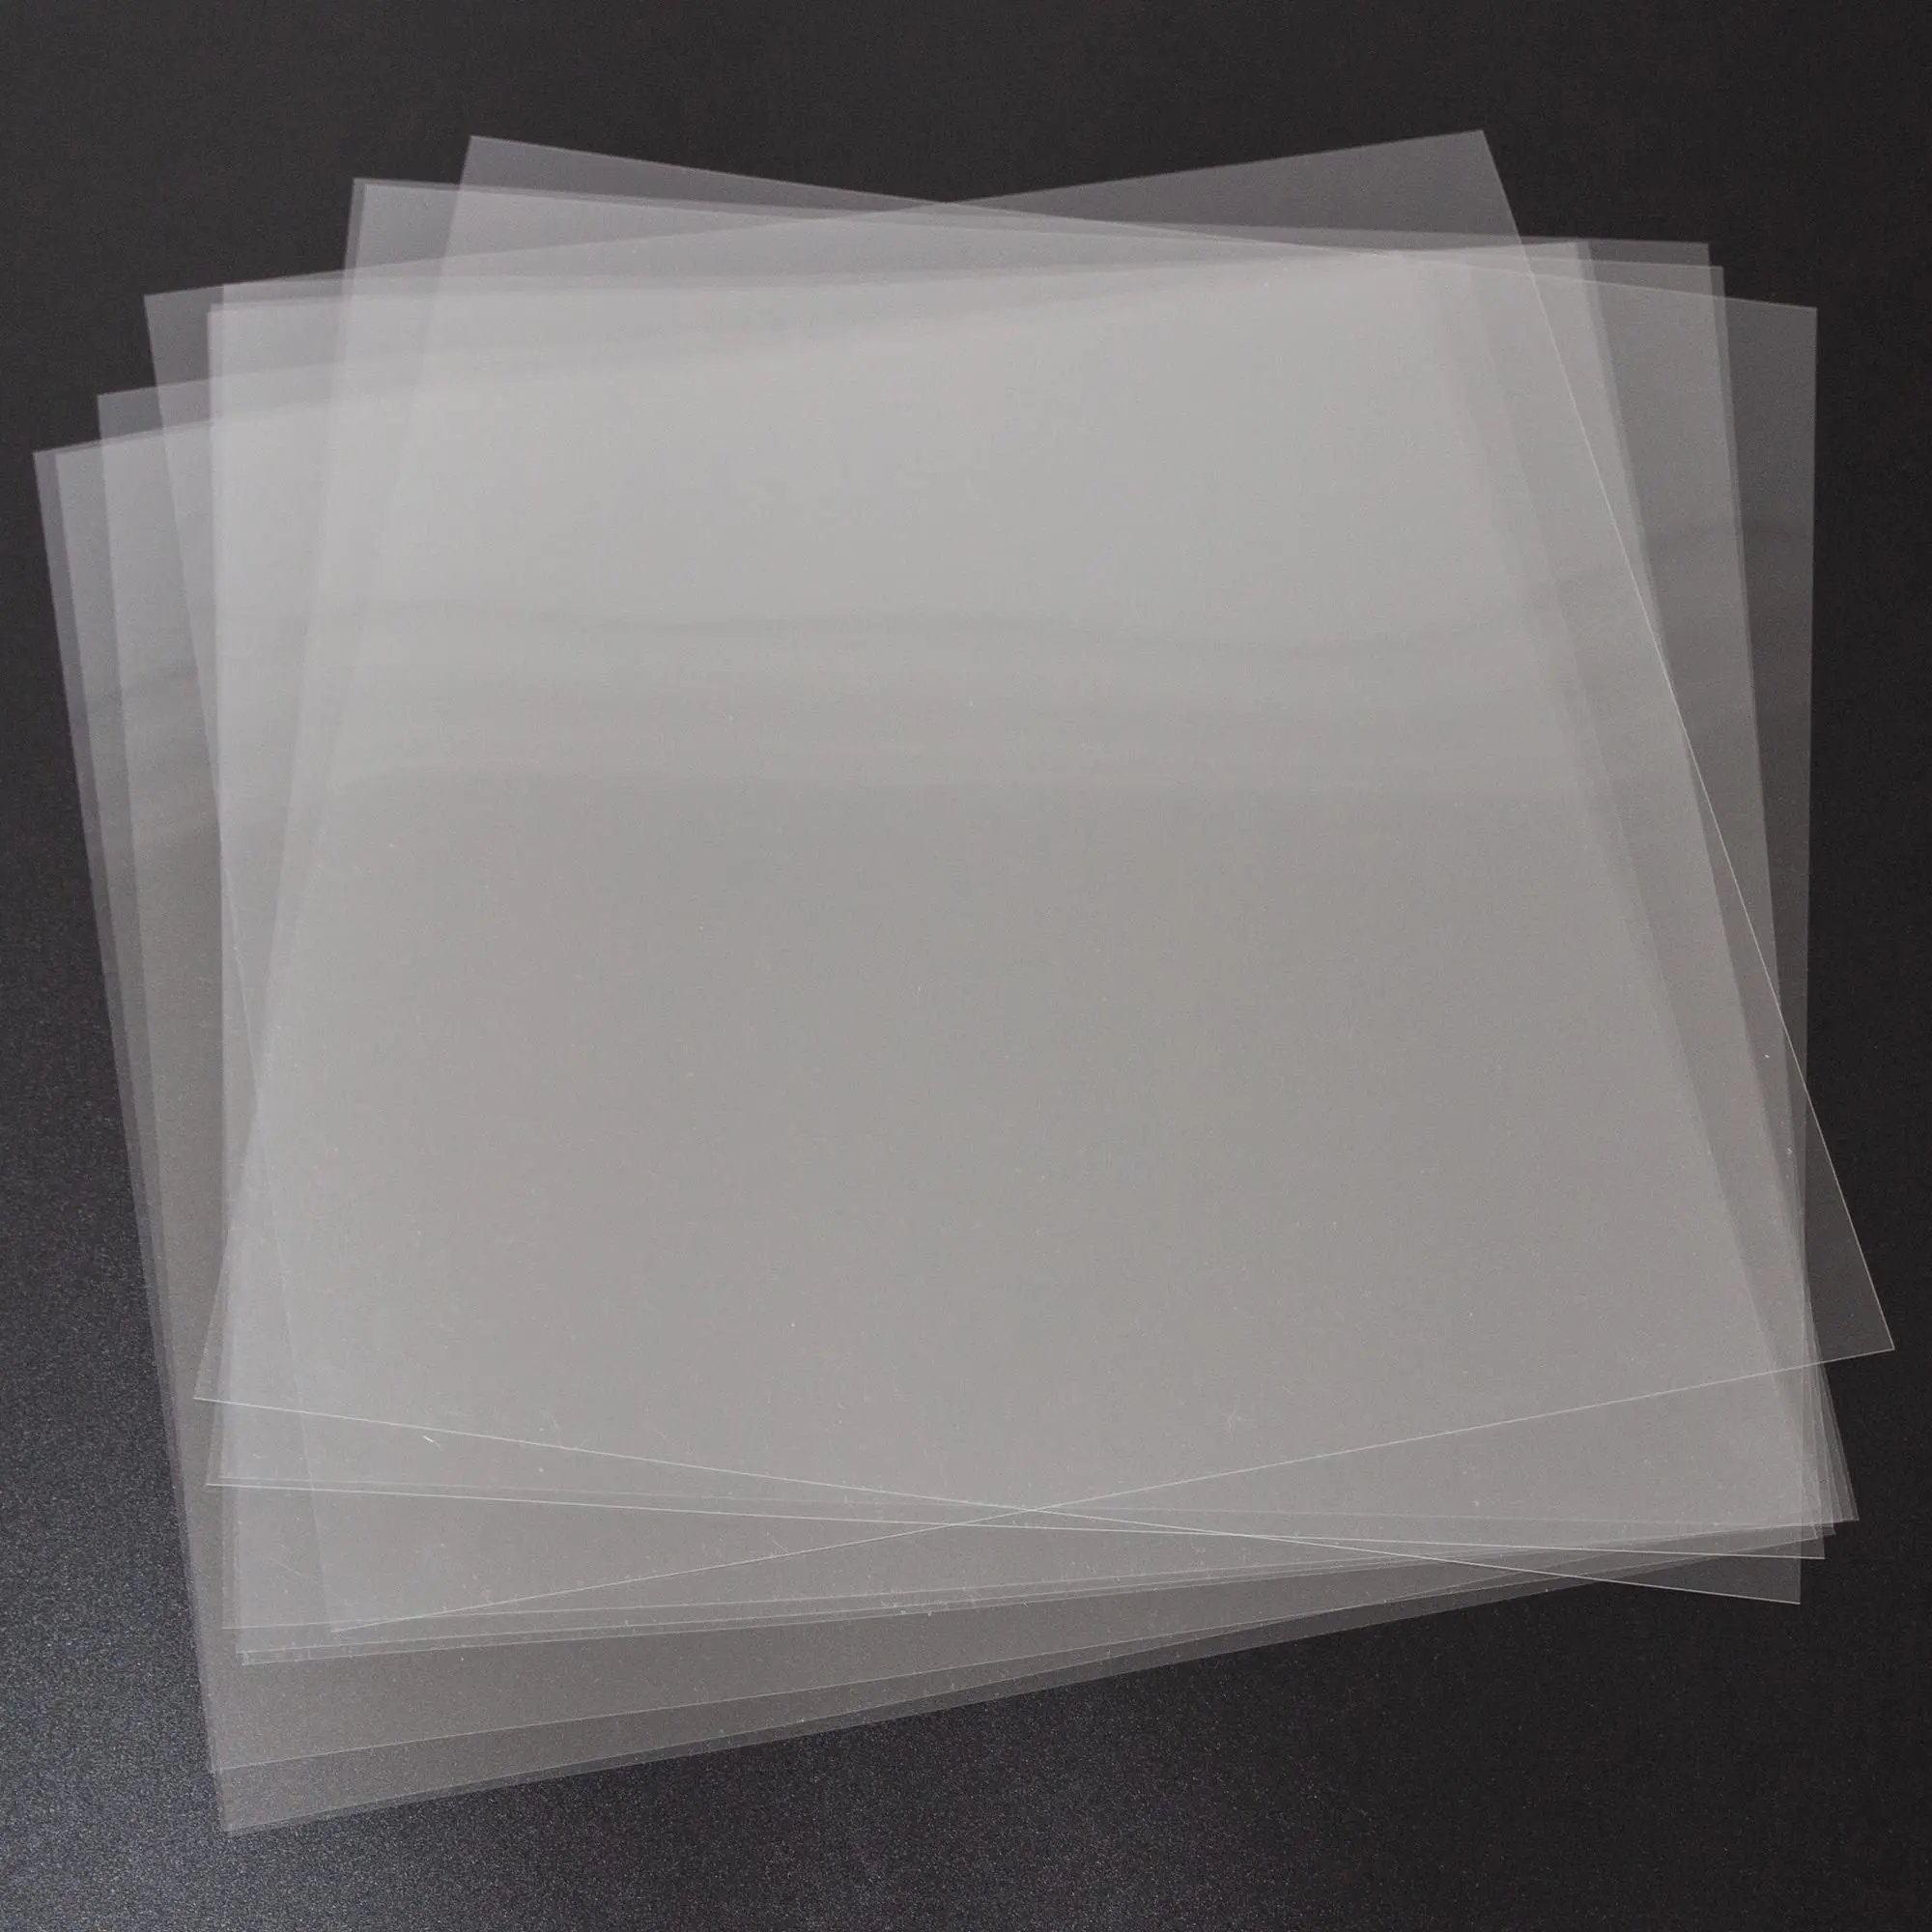 donde comprar laminas de plastico transparente - Cómo se llama el plástico que se pone en el techo